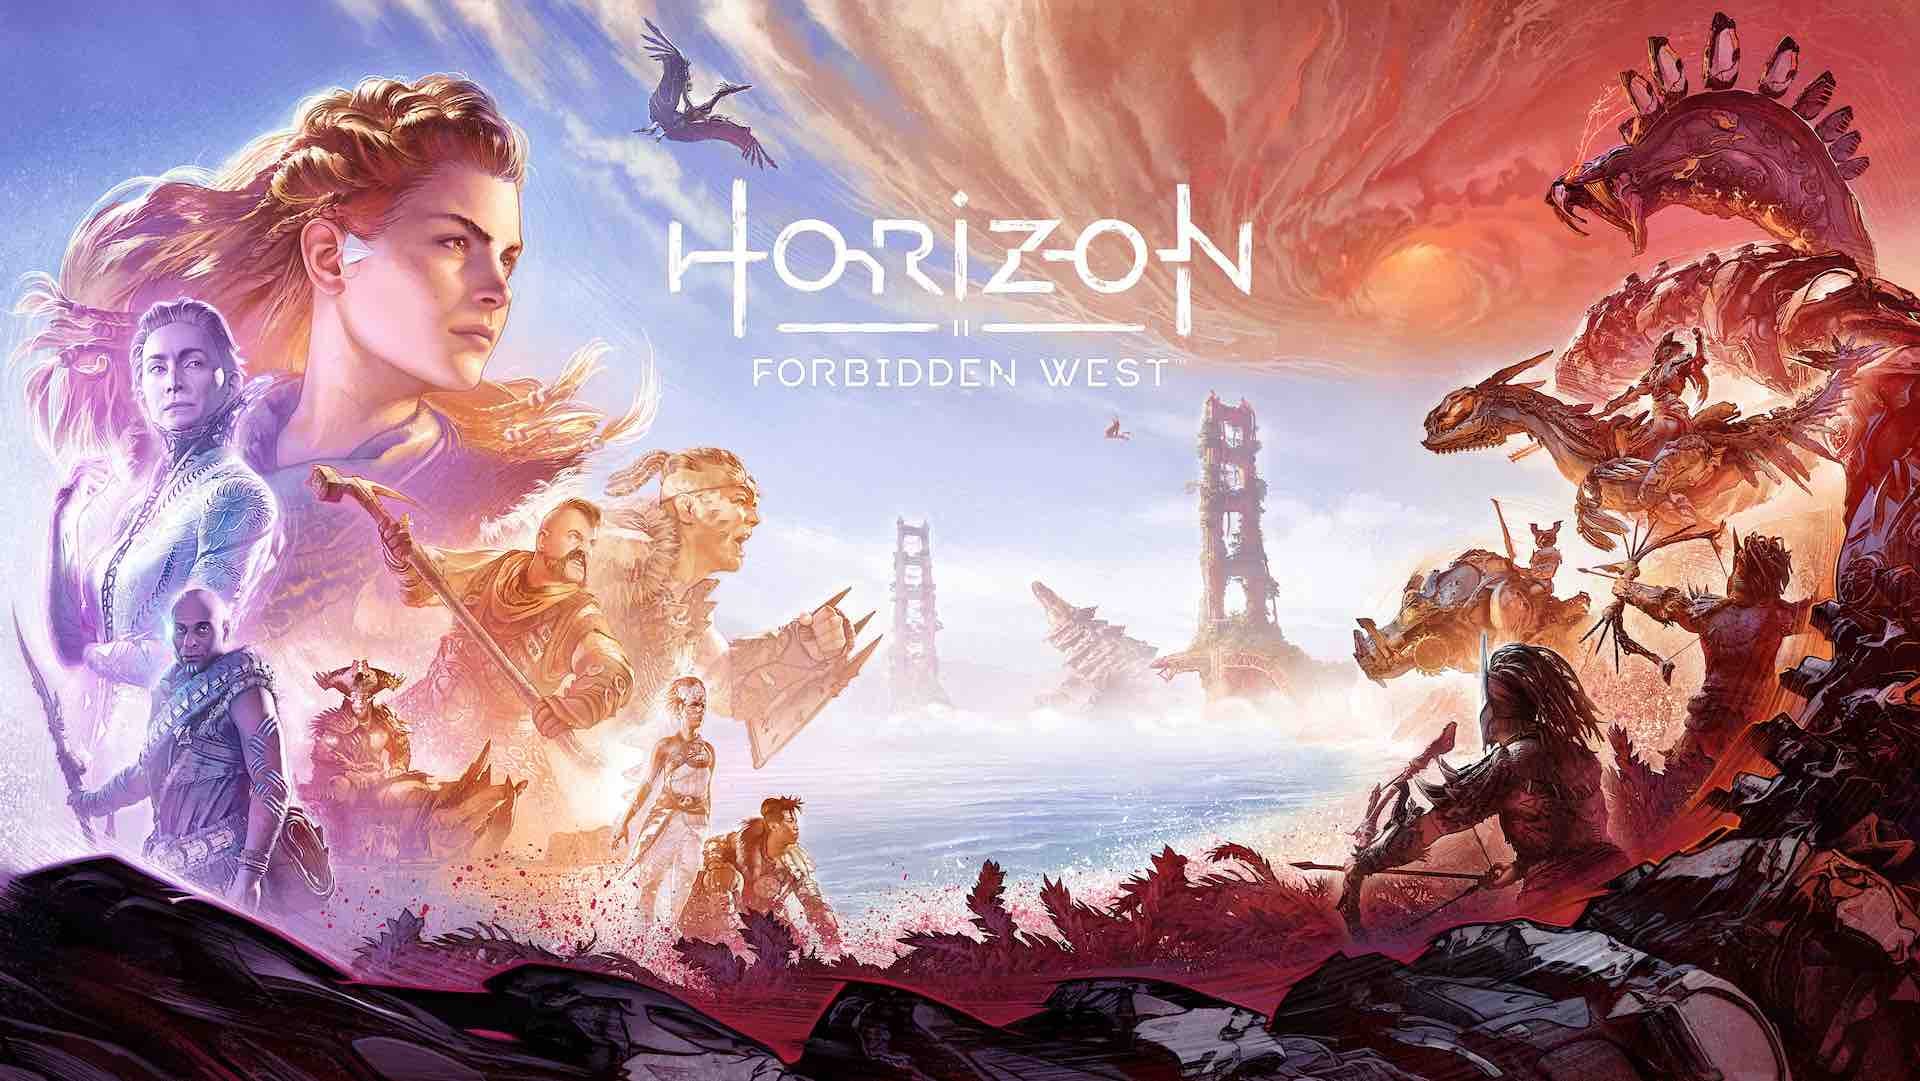 How long is Horizon Forbidden West?